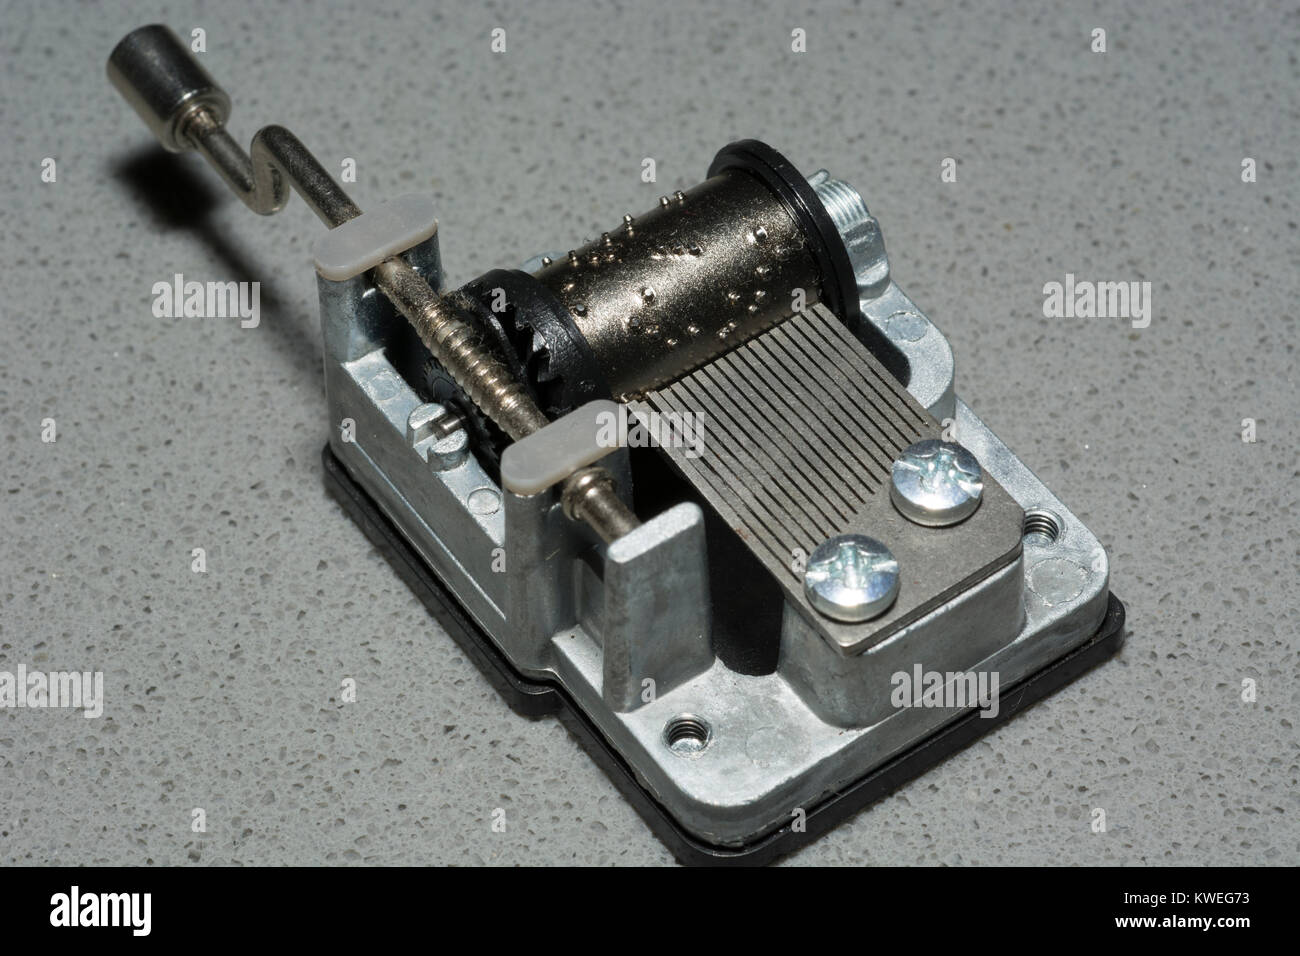 Meccanismo carillon immagini e fotografie stock ad alta risoluzione - Alamy